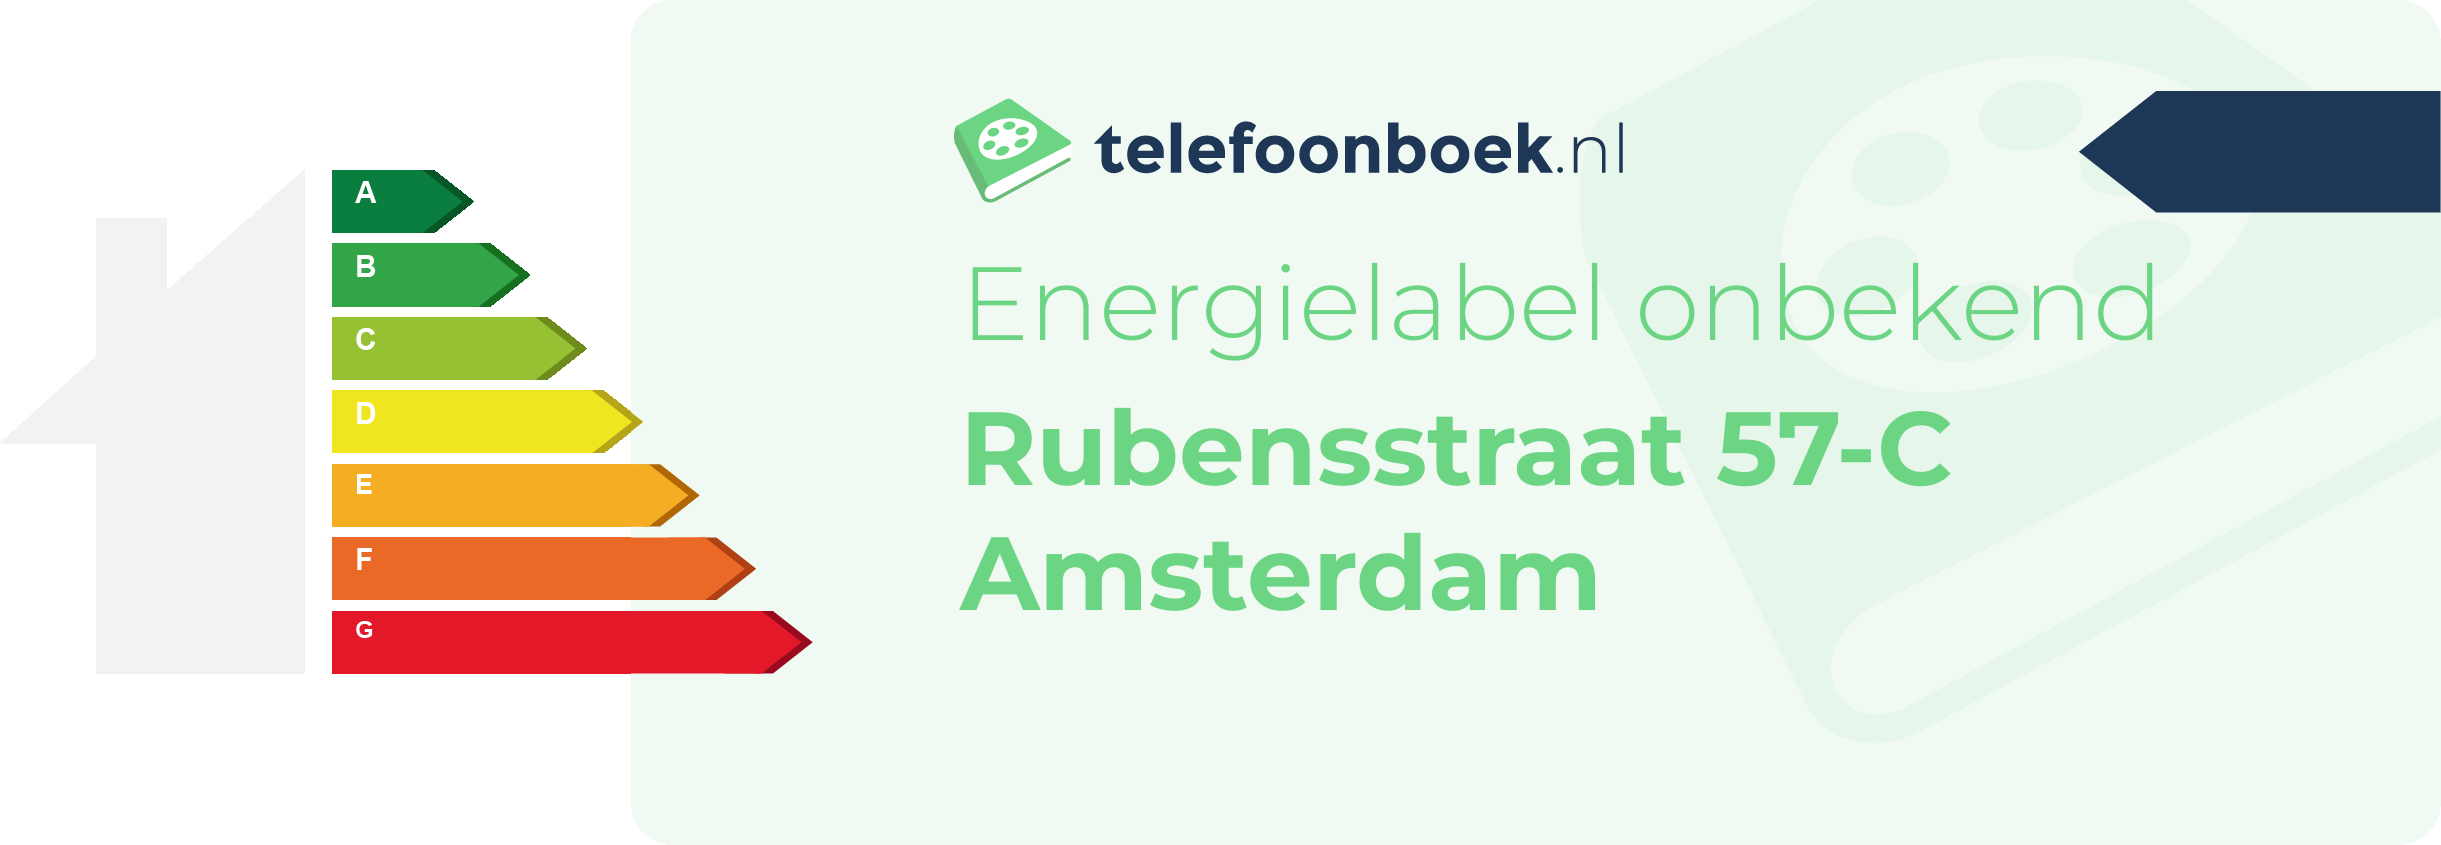 Energielabel Rubensstraat 57-C Amsterdam